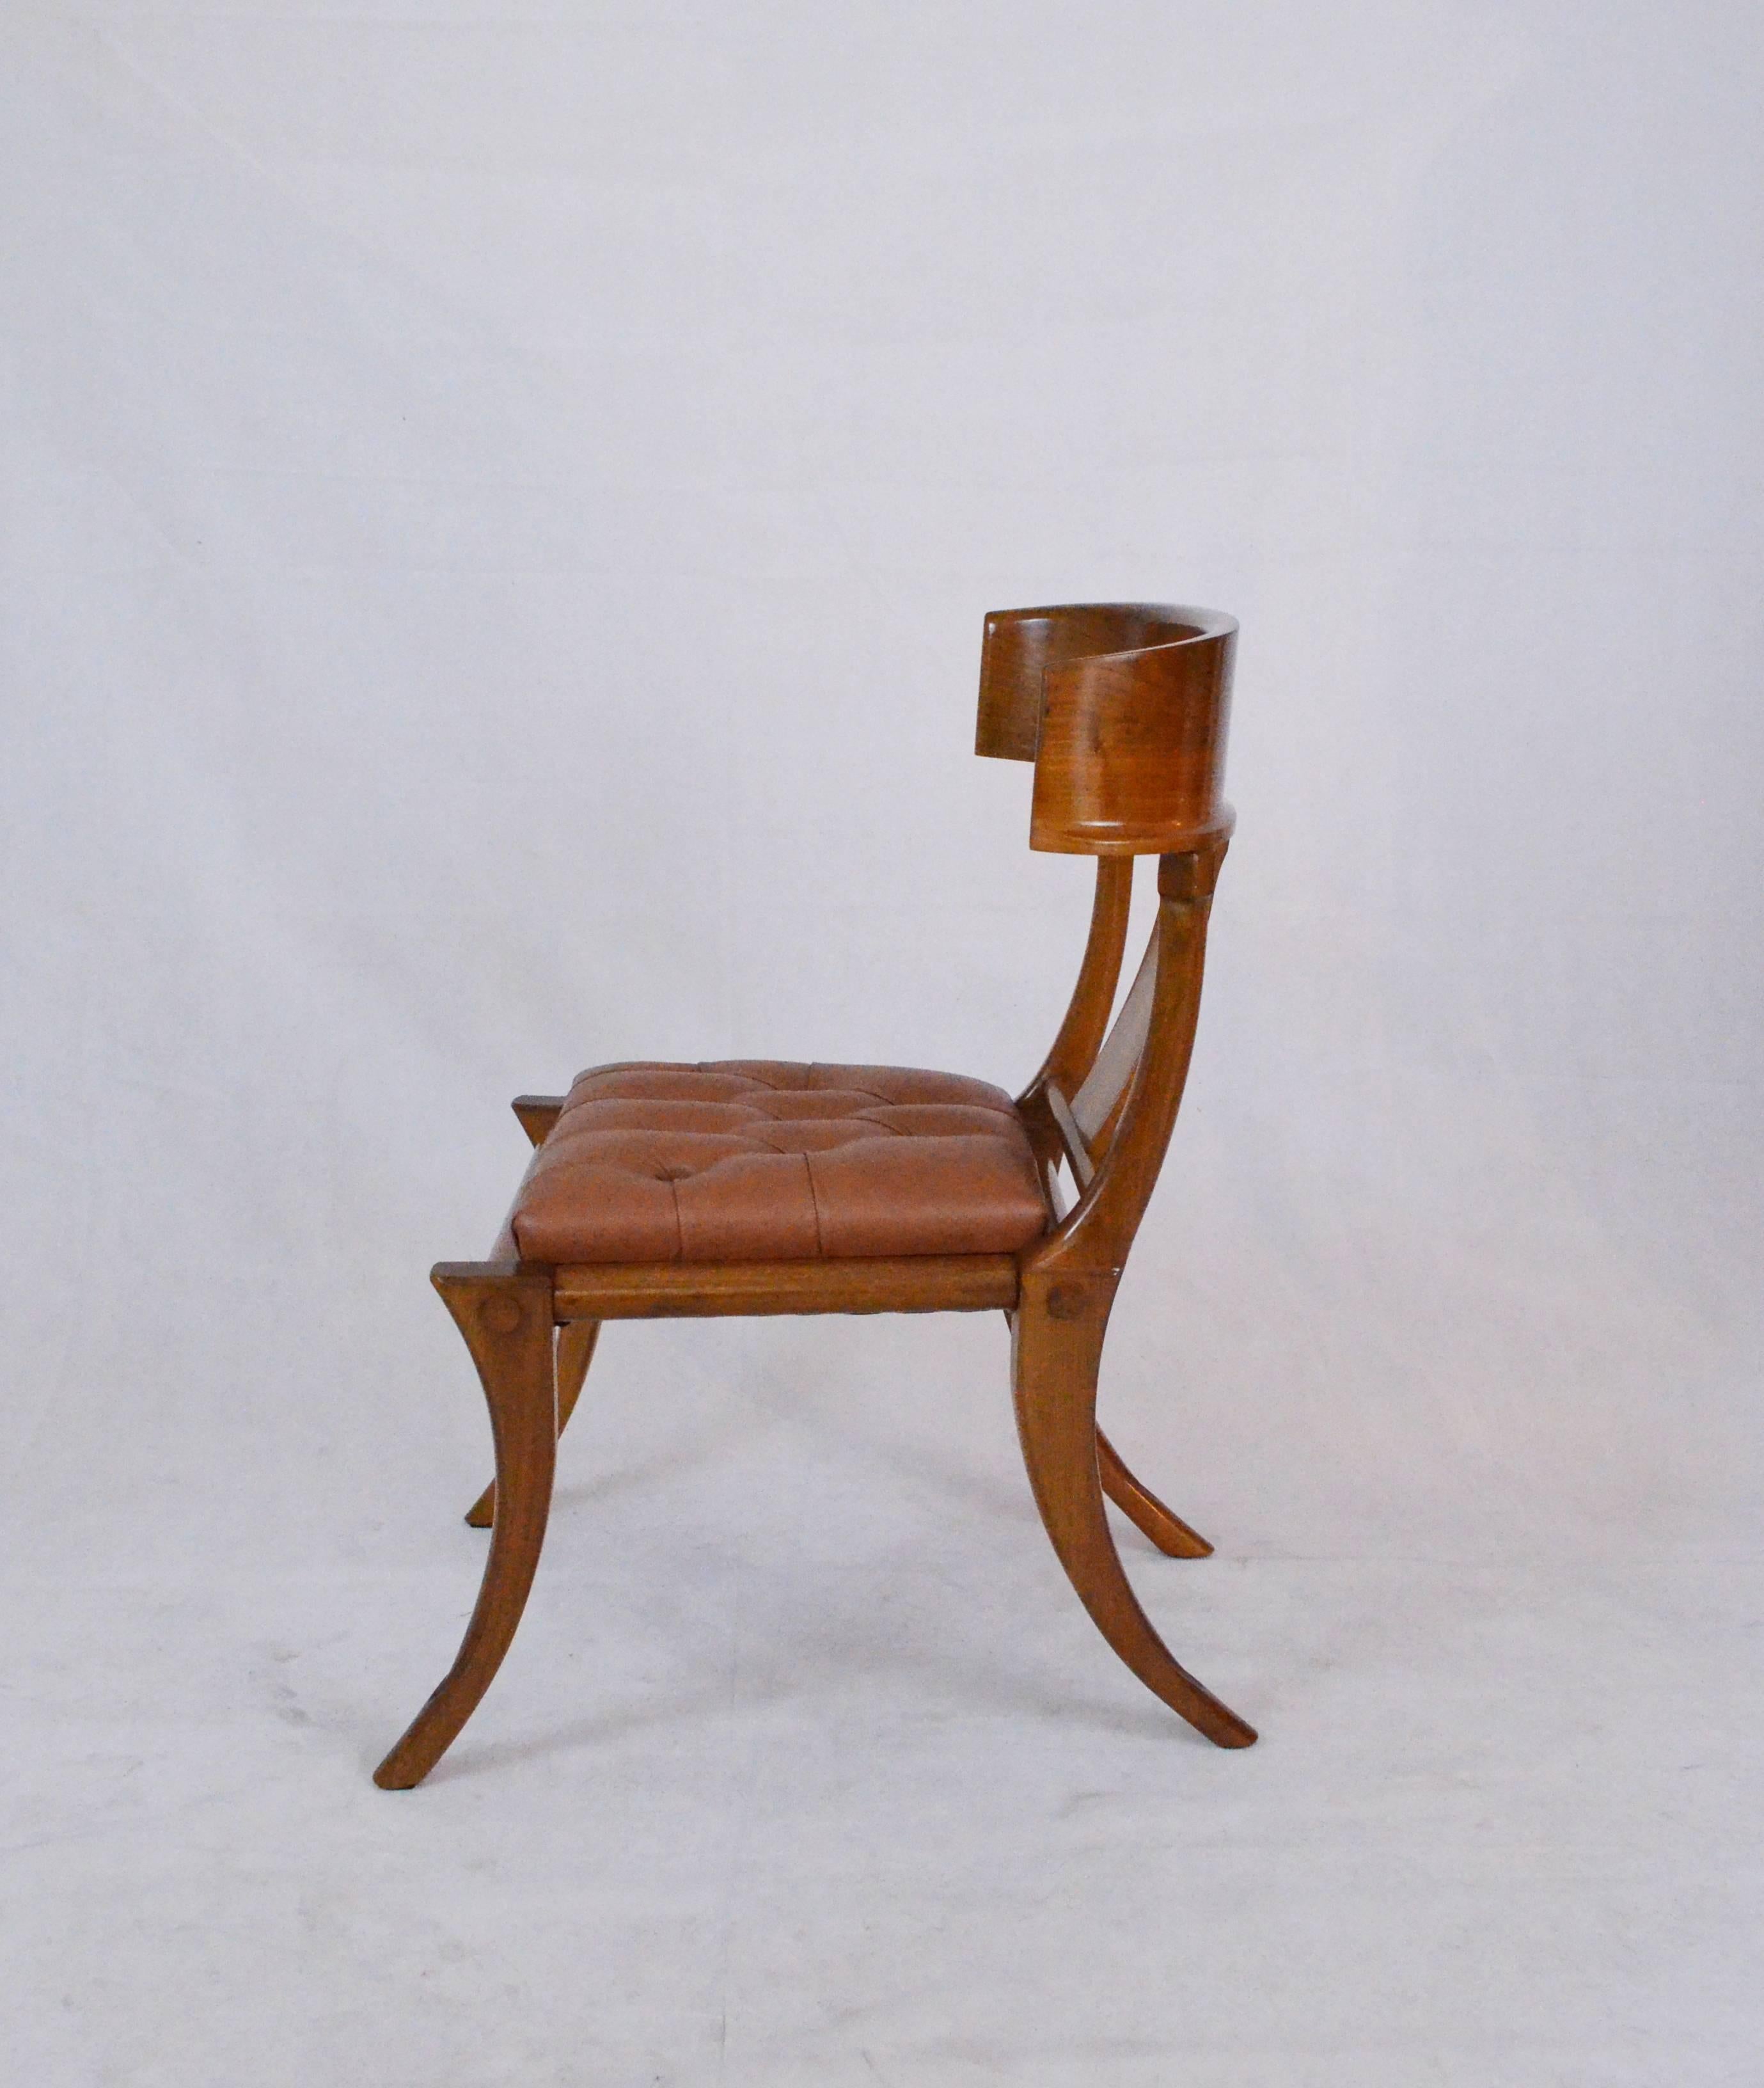 Klismos Stühle nach Maß mit Säbelbeinen, glänzendem Naturholz und Ledersitzen mit Knöpfen. Erhältlich in anderen Farben und Bezügen.

Stühle aus Nussbaumholz mit tiefer und großer Sitzfläche und umlaufender Rückenlehne mit Gefühl. Diese Stühle